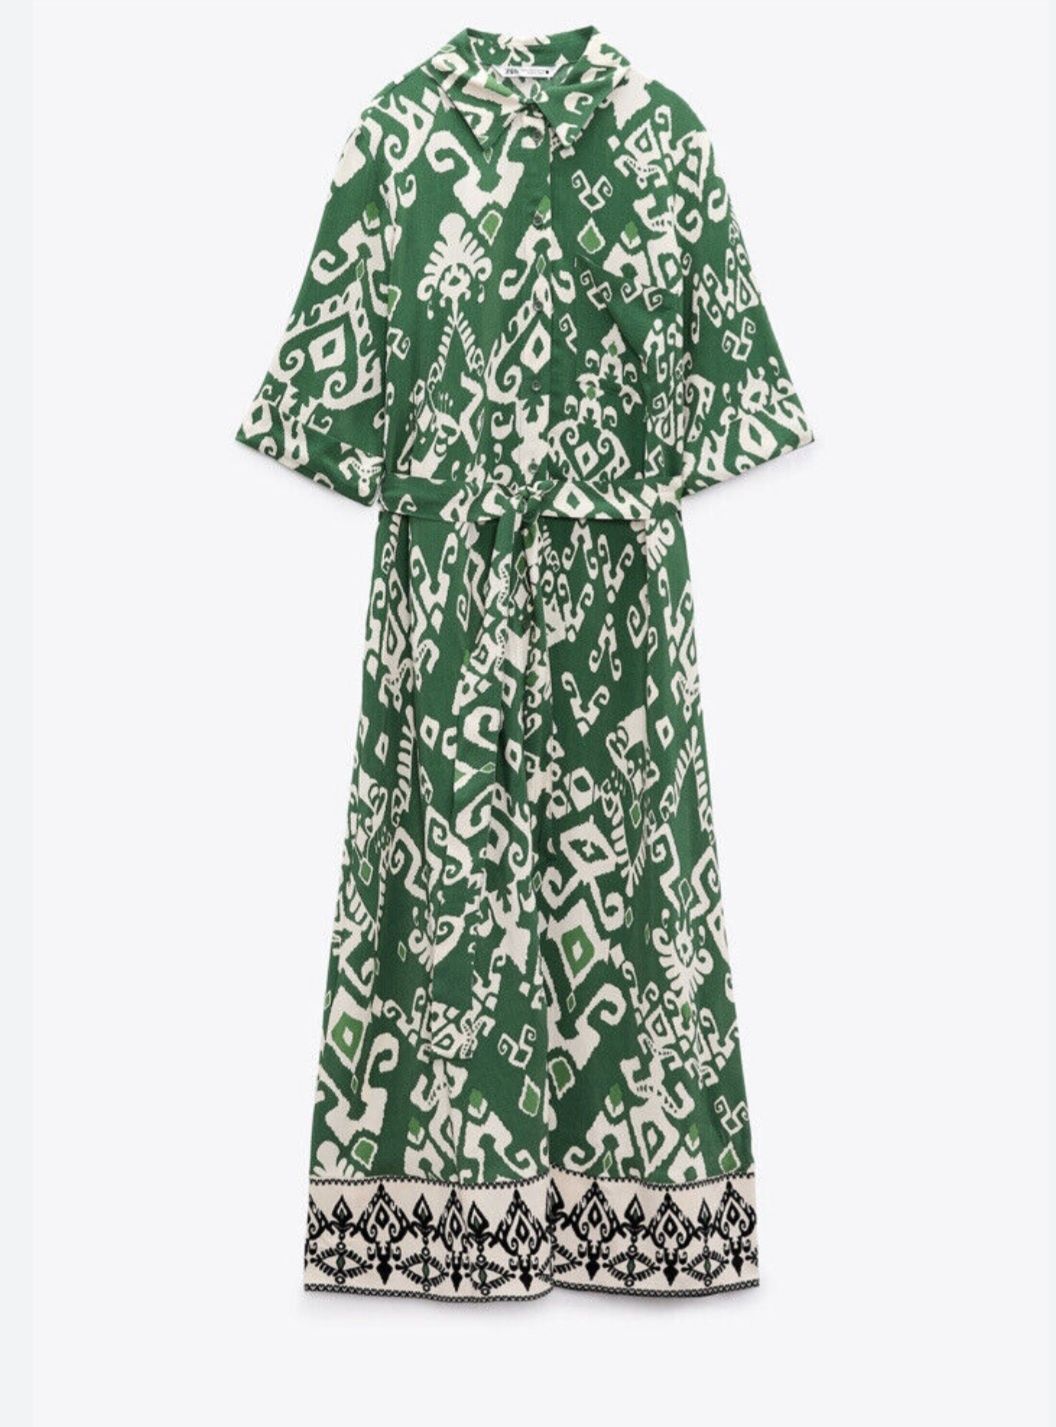 довге плаття на гудзиках с поясом Zara, оригінал
Стан ідеальний 
Розмі